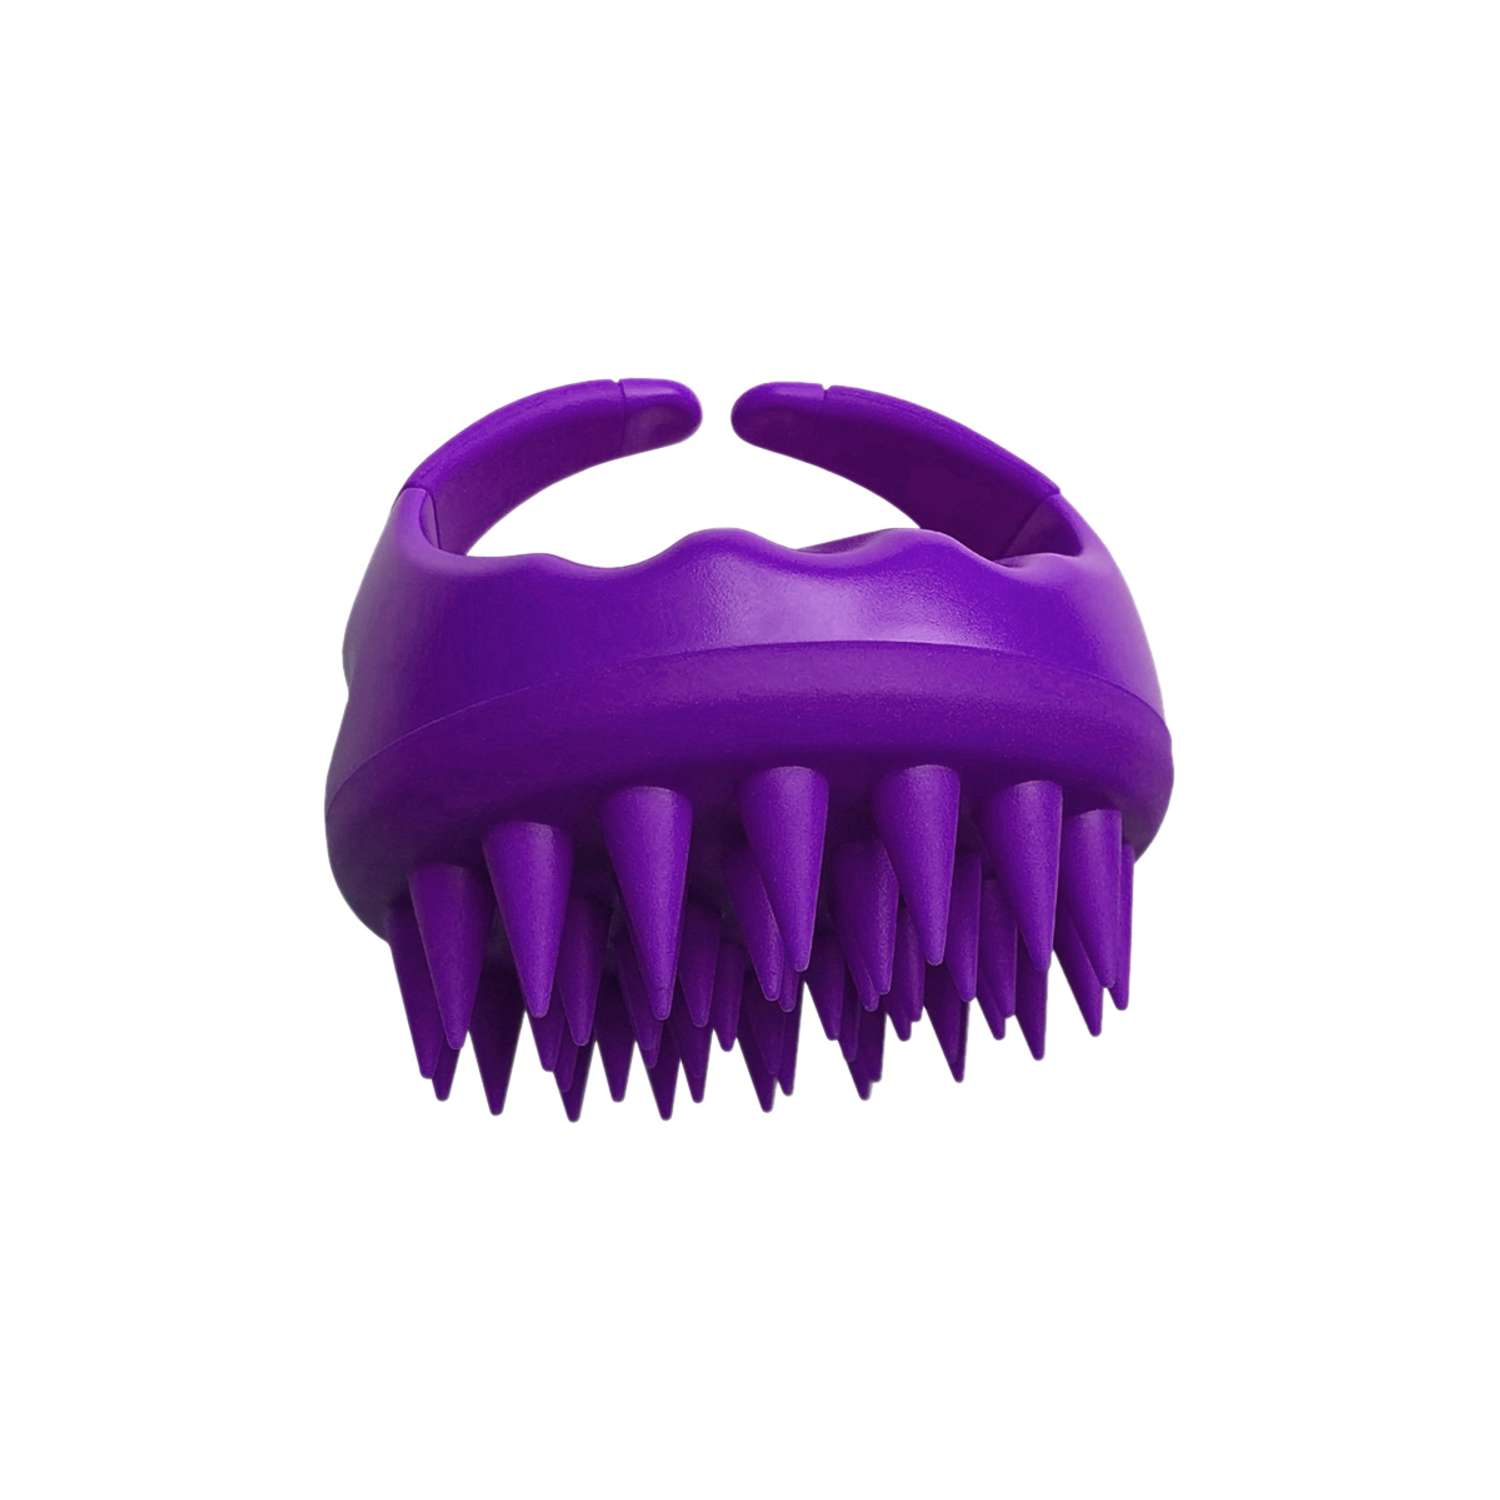 Щетка для мытья волос и головы Clarette с силиконовым зубьями - фото 1